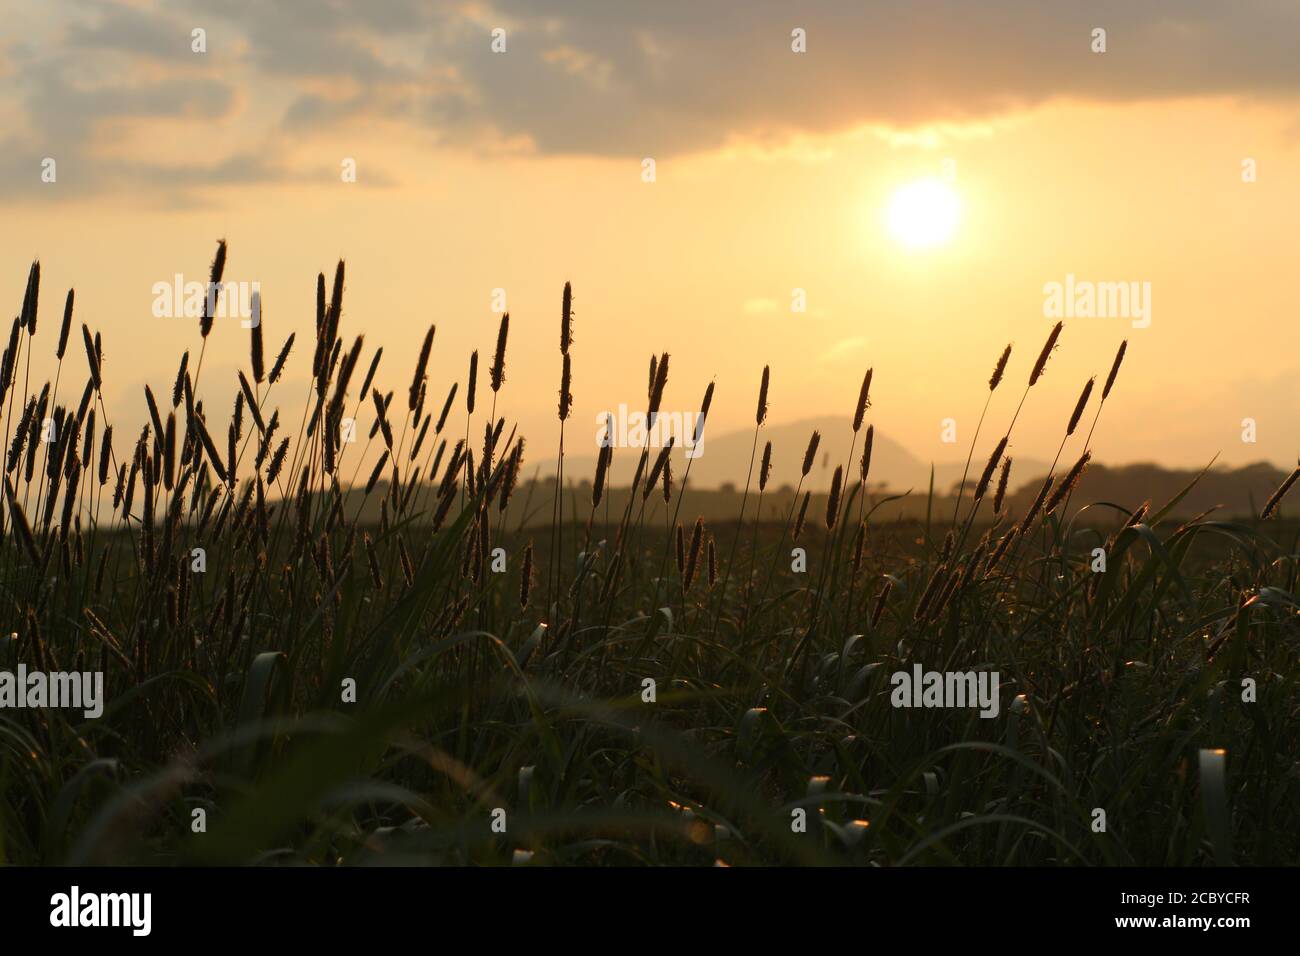 Herbe dans le champ donnant sur les montagnes au coucher du soleil. Bantry, Co Cork. Irlande. Banque D'Images